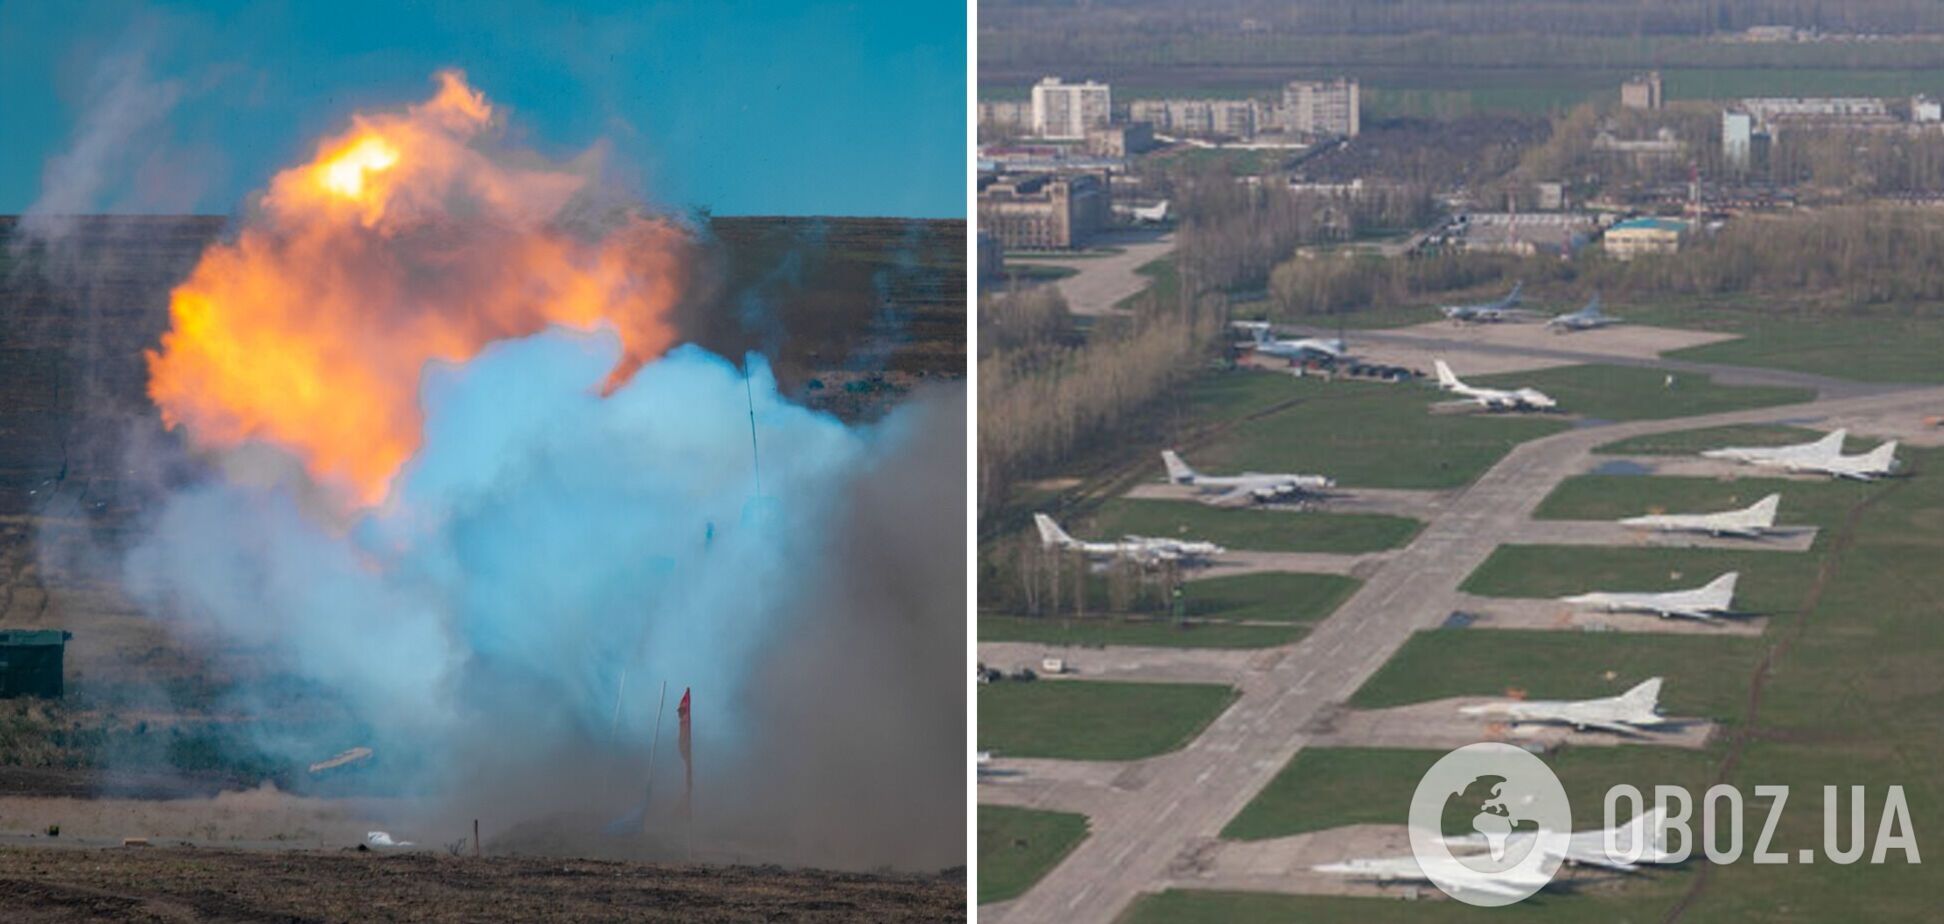 ГУР о взрывах на аэродромах в Энгельсе и вблизи Рязани: за все, что происходит на территории РФ, отвечает российское правительство